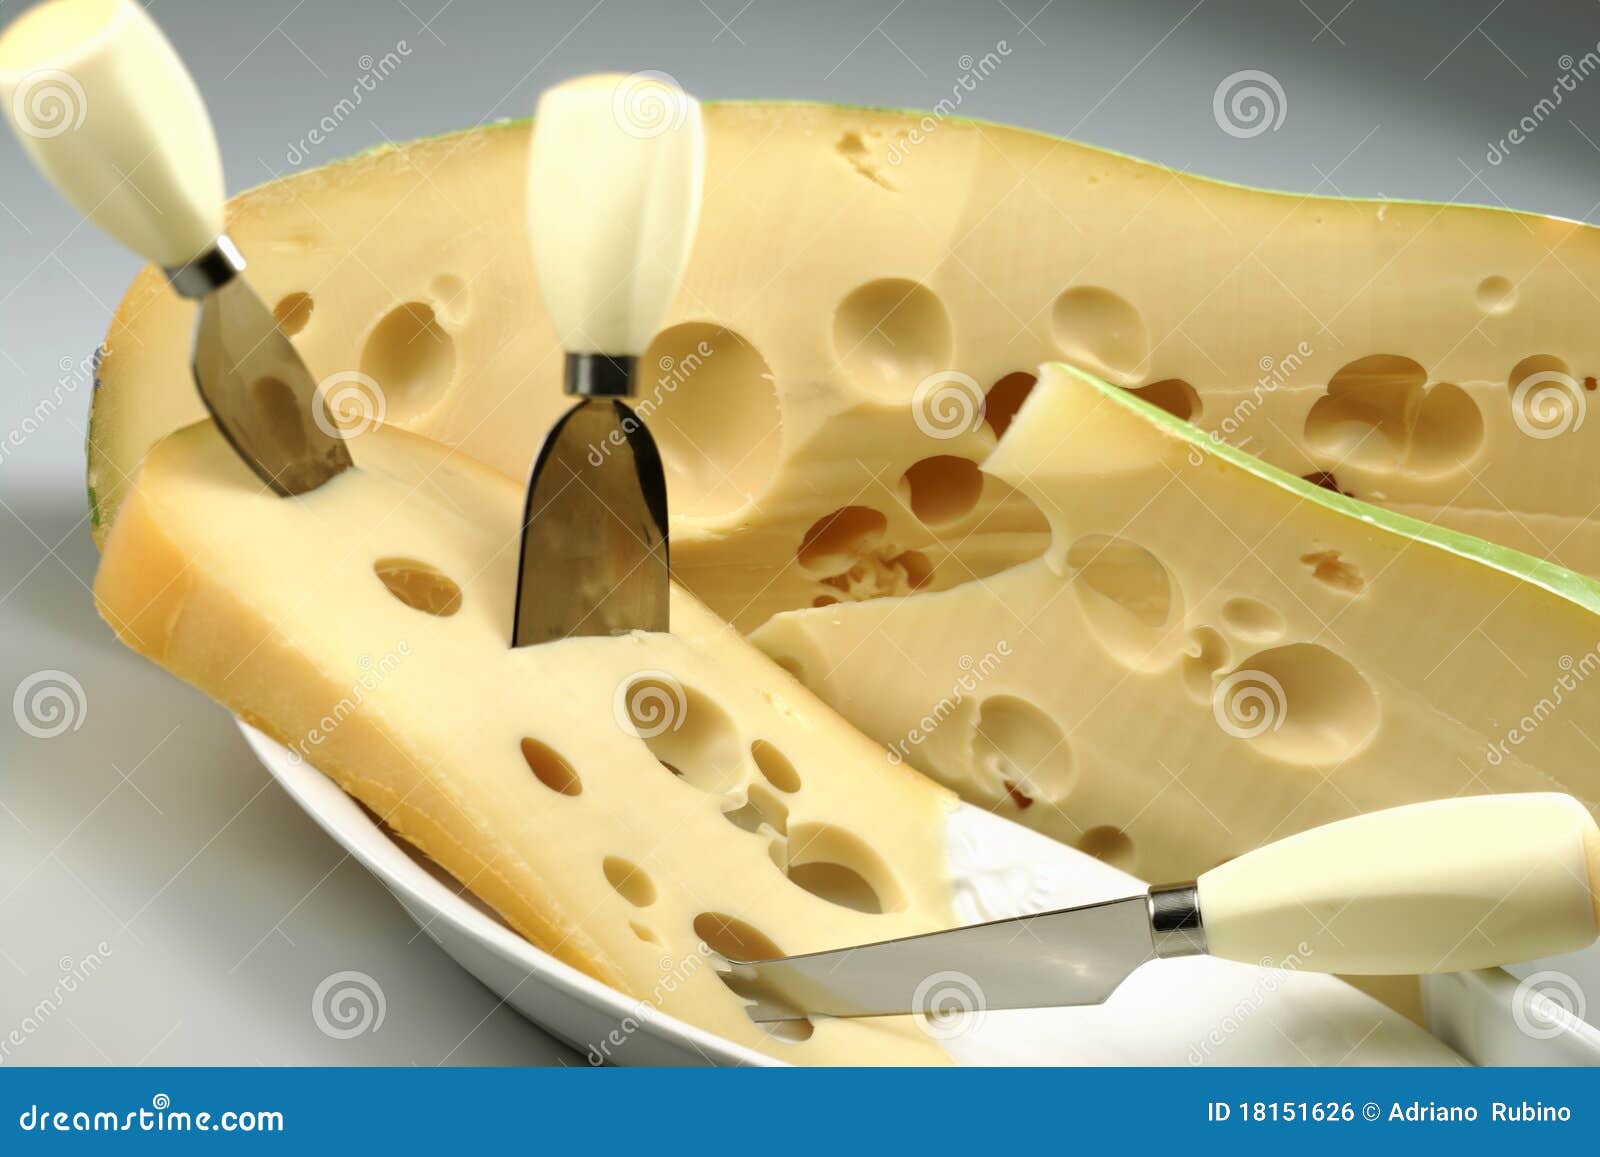 best cheese to diet